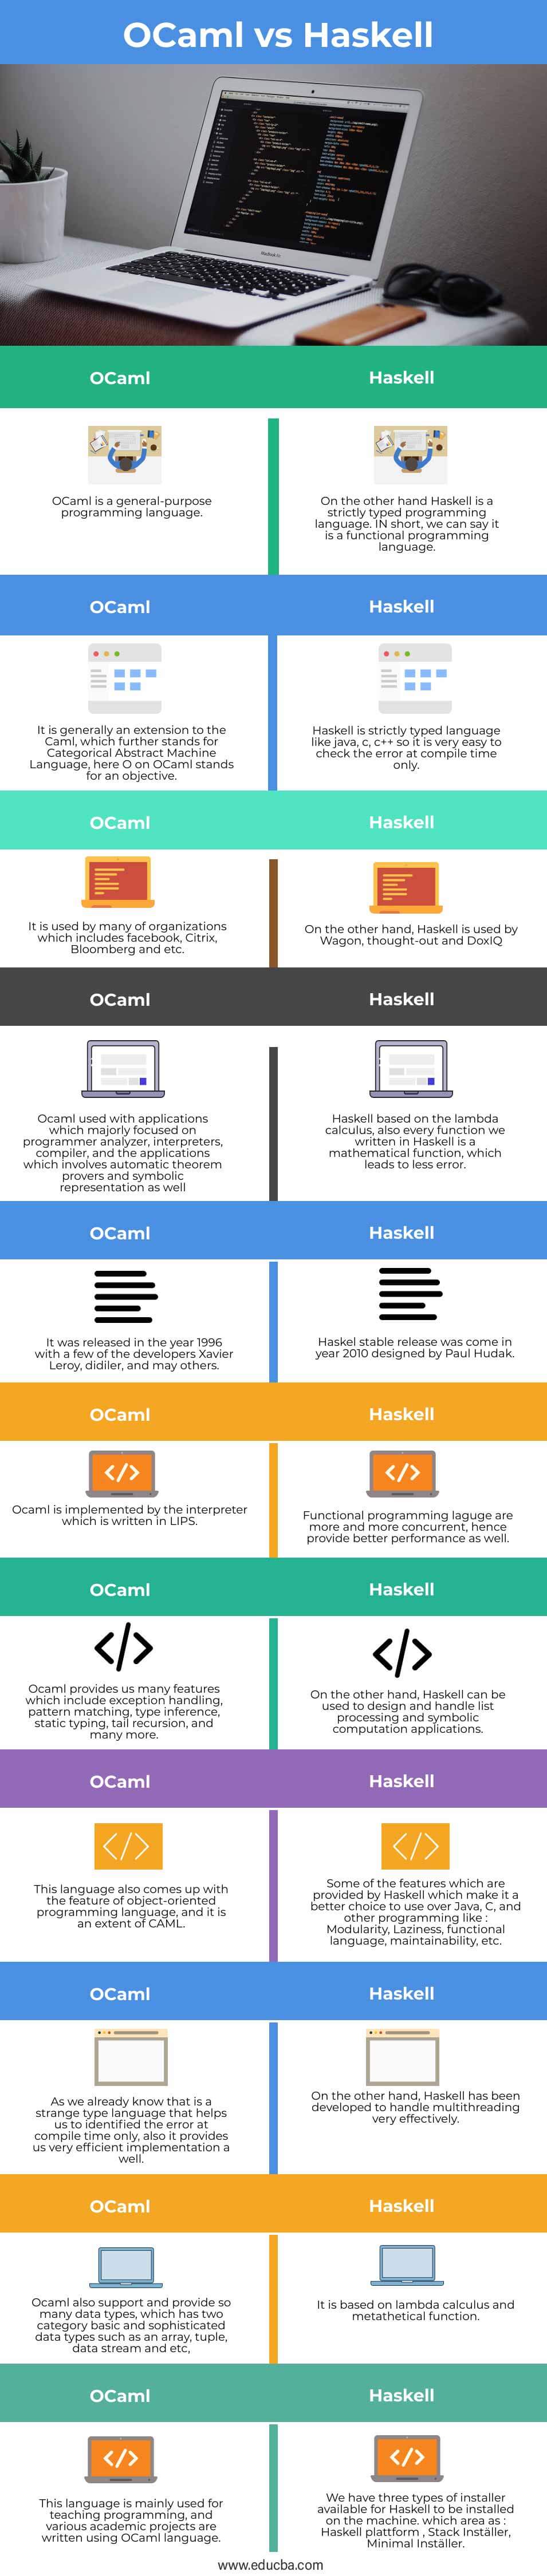 Haskell-vs-OCaml-info